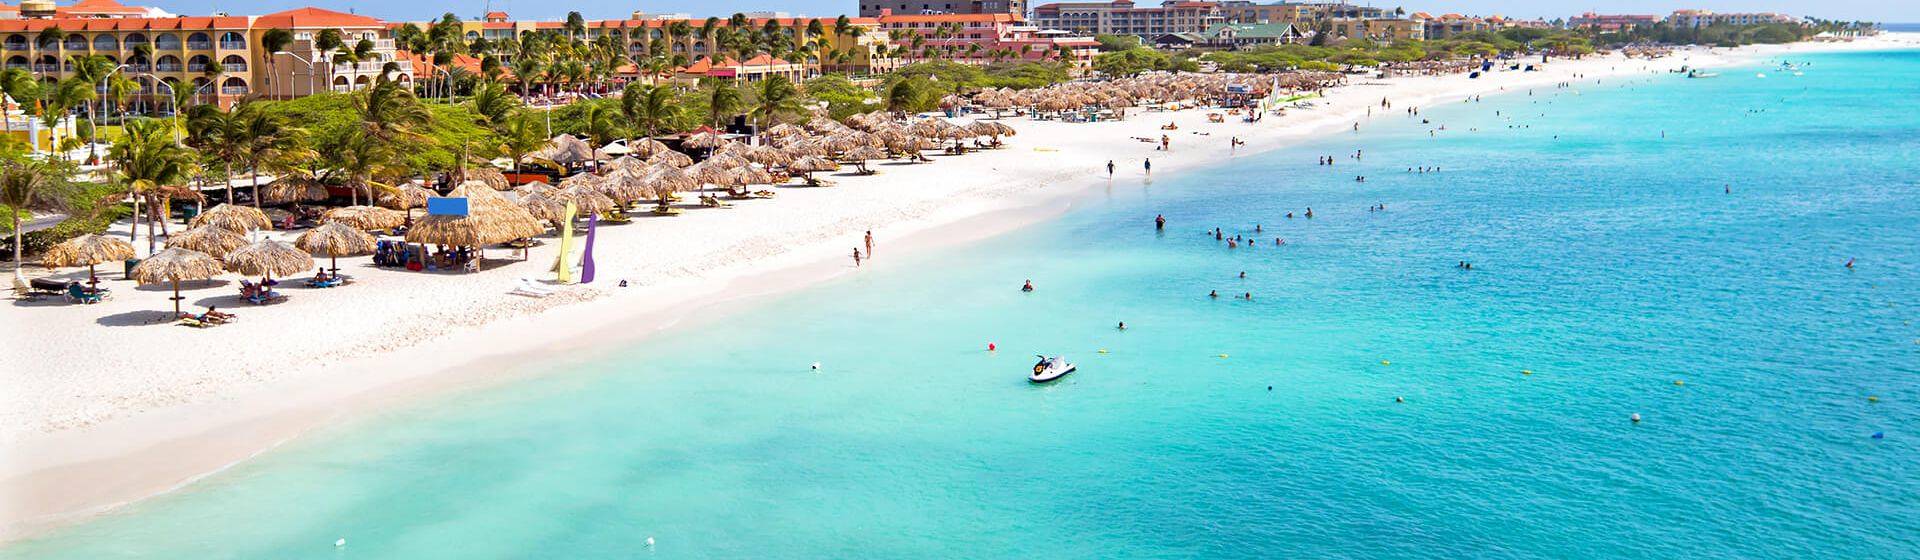 Holidays to Aruba Image